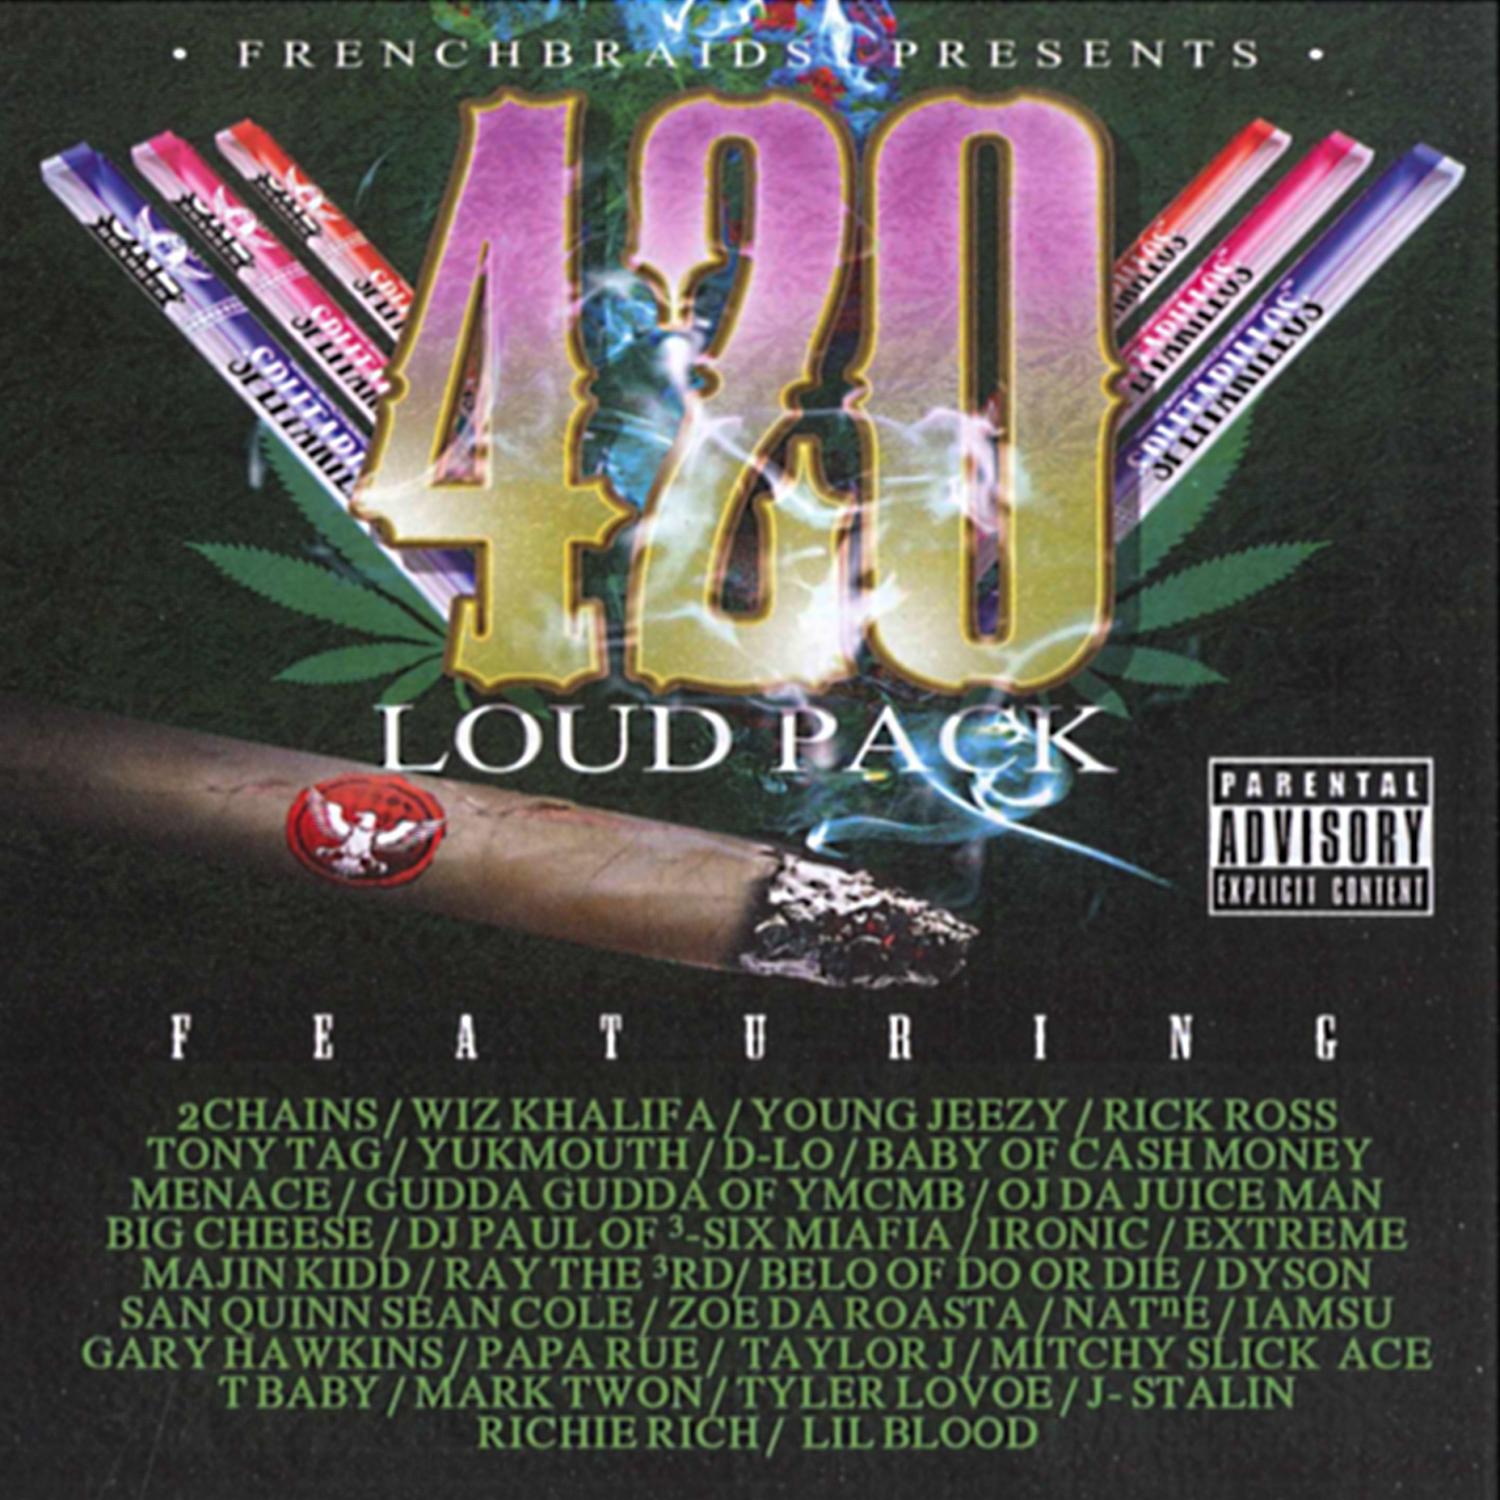 420 Loud Pack